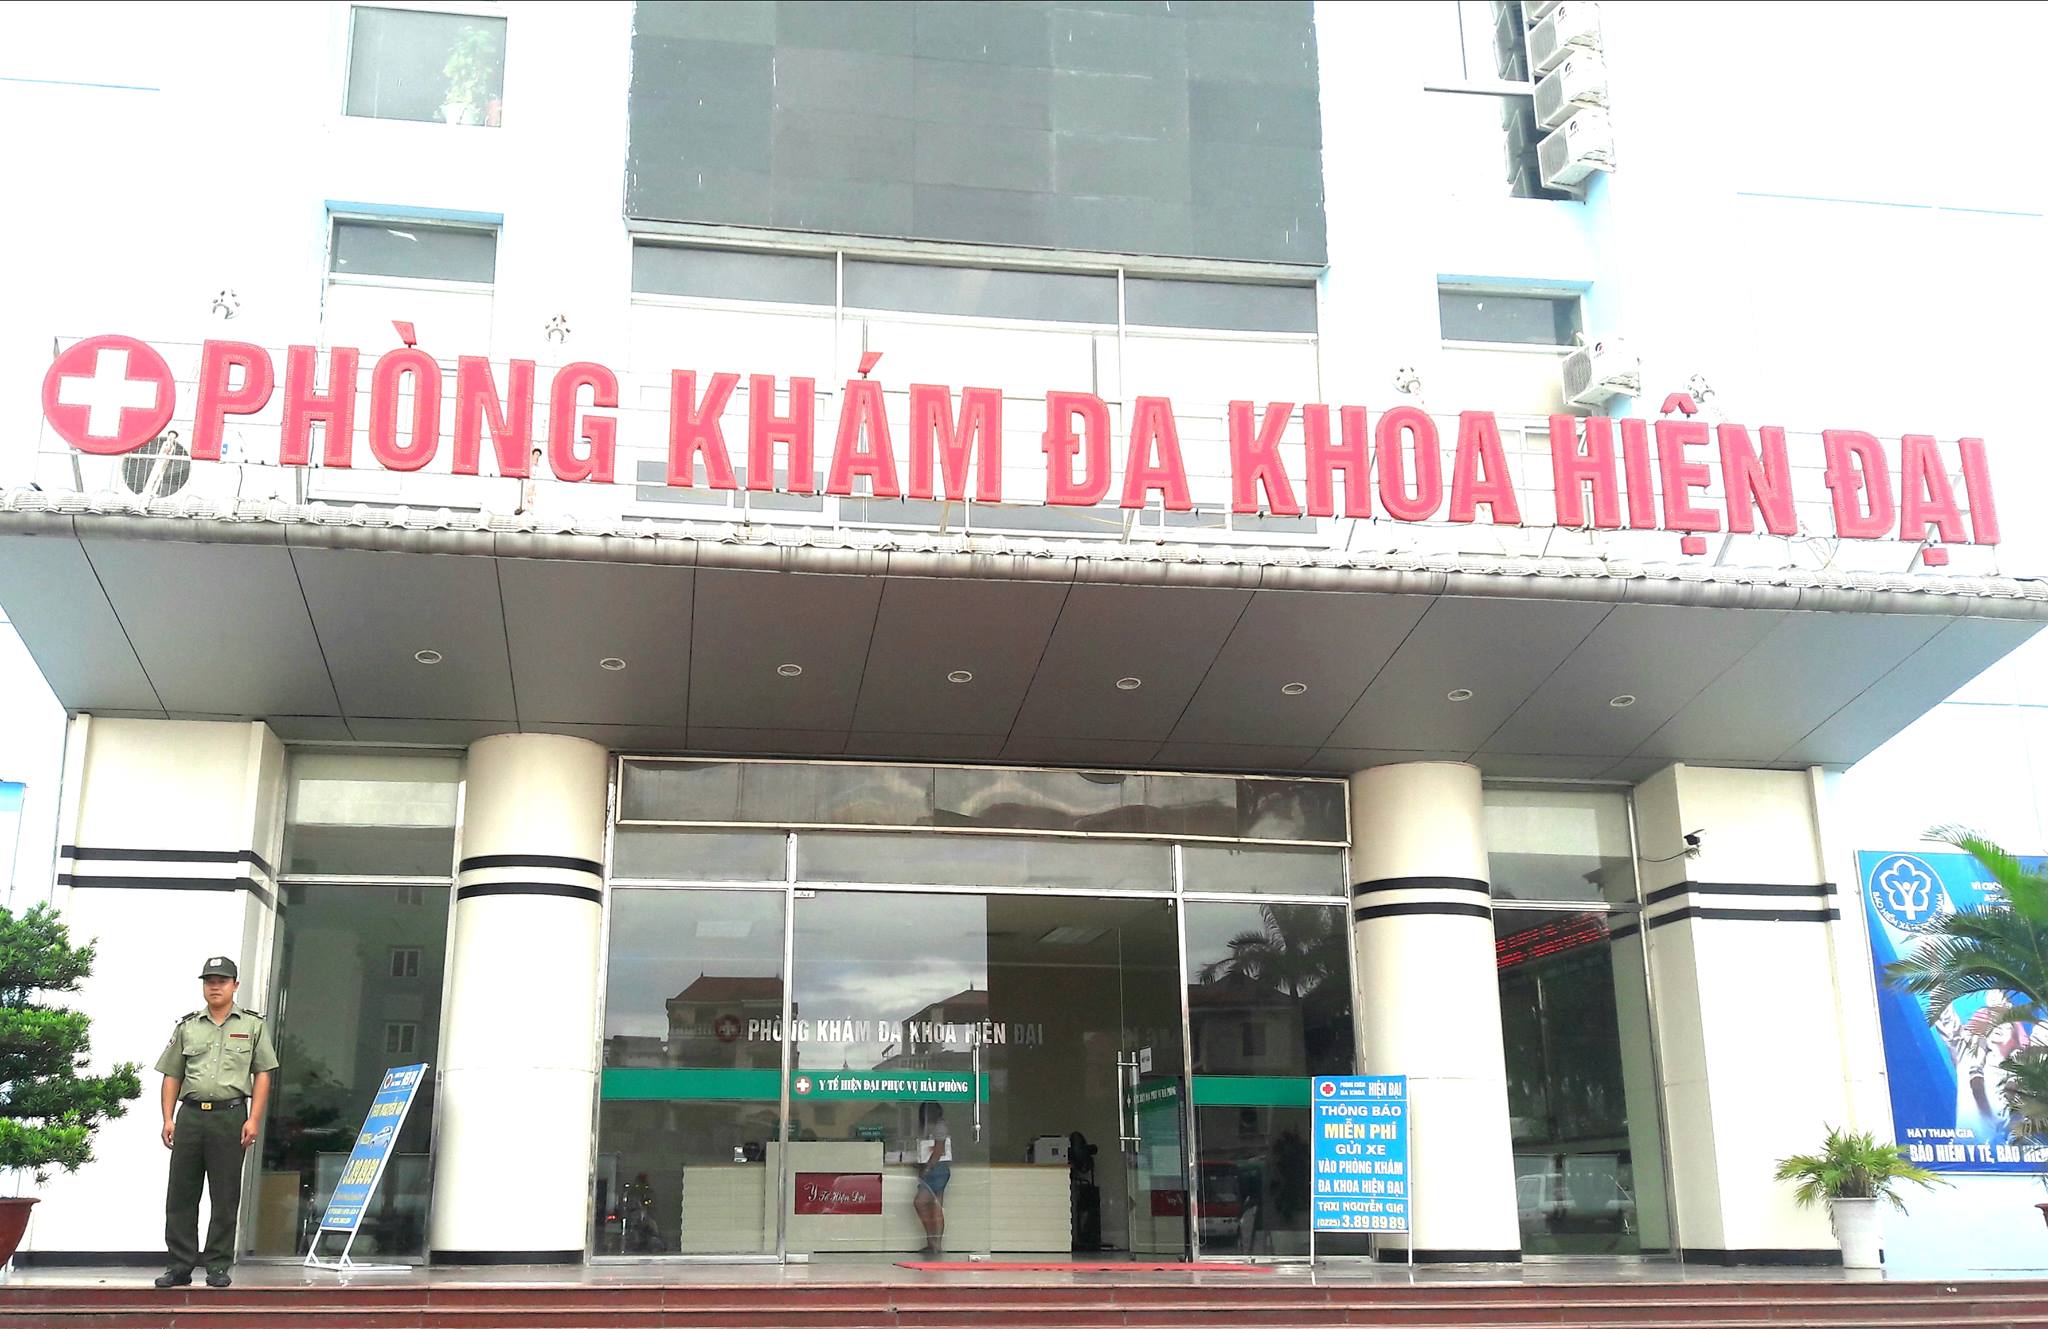 Công ty bảo vệ Hồng Long Hải Phòng